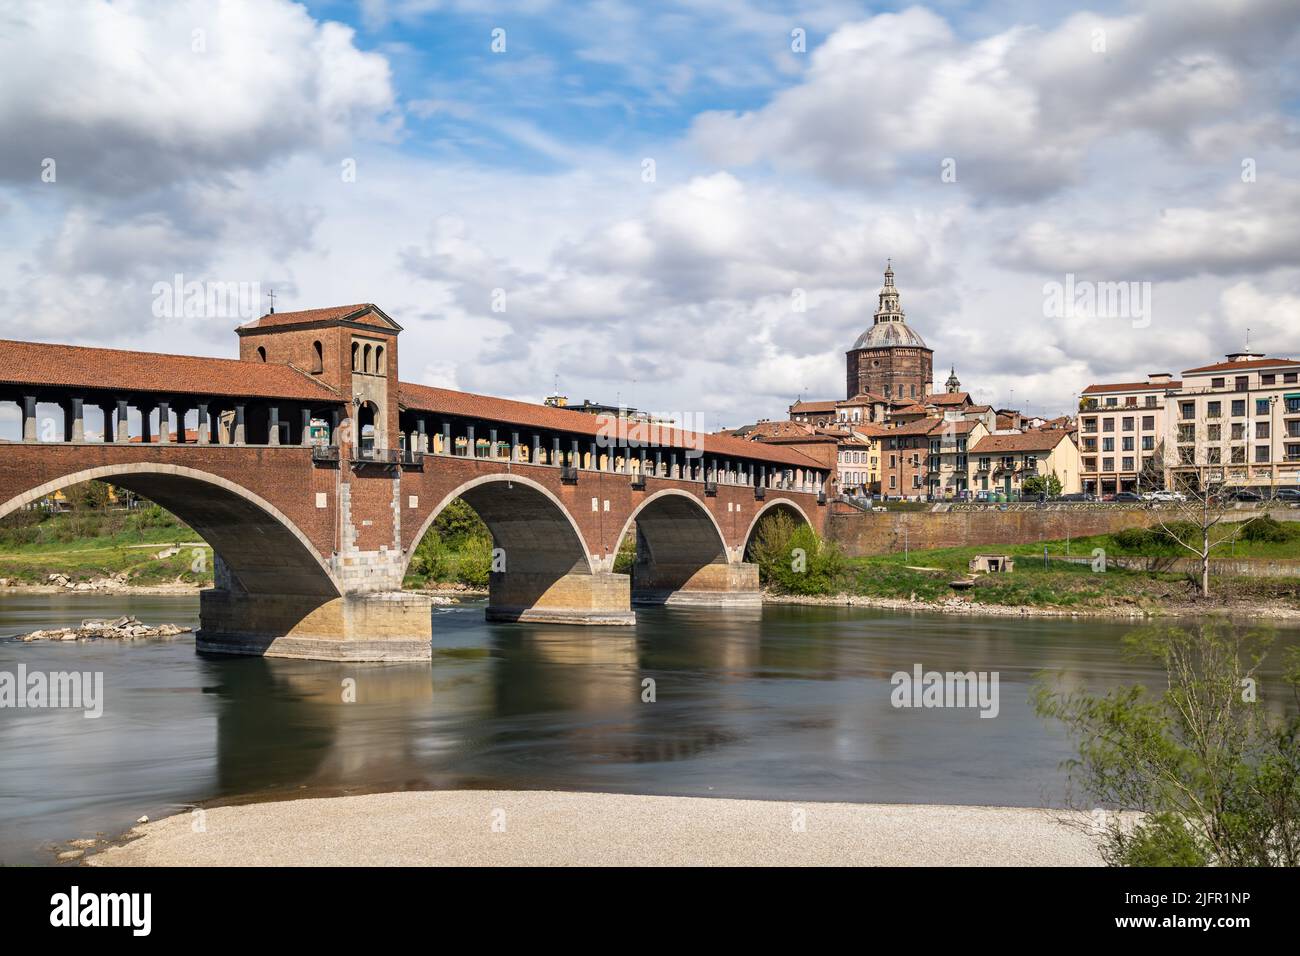 The Ponte Coperto (Covered Bridge) in Pavia, a brick arch bridge over the Ticino River, Lombardy, Italy Stock Photo